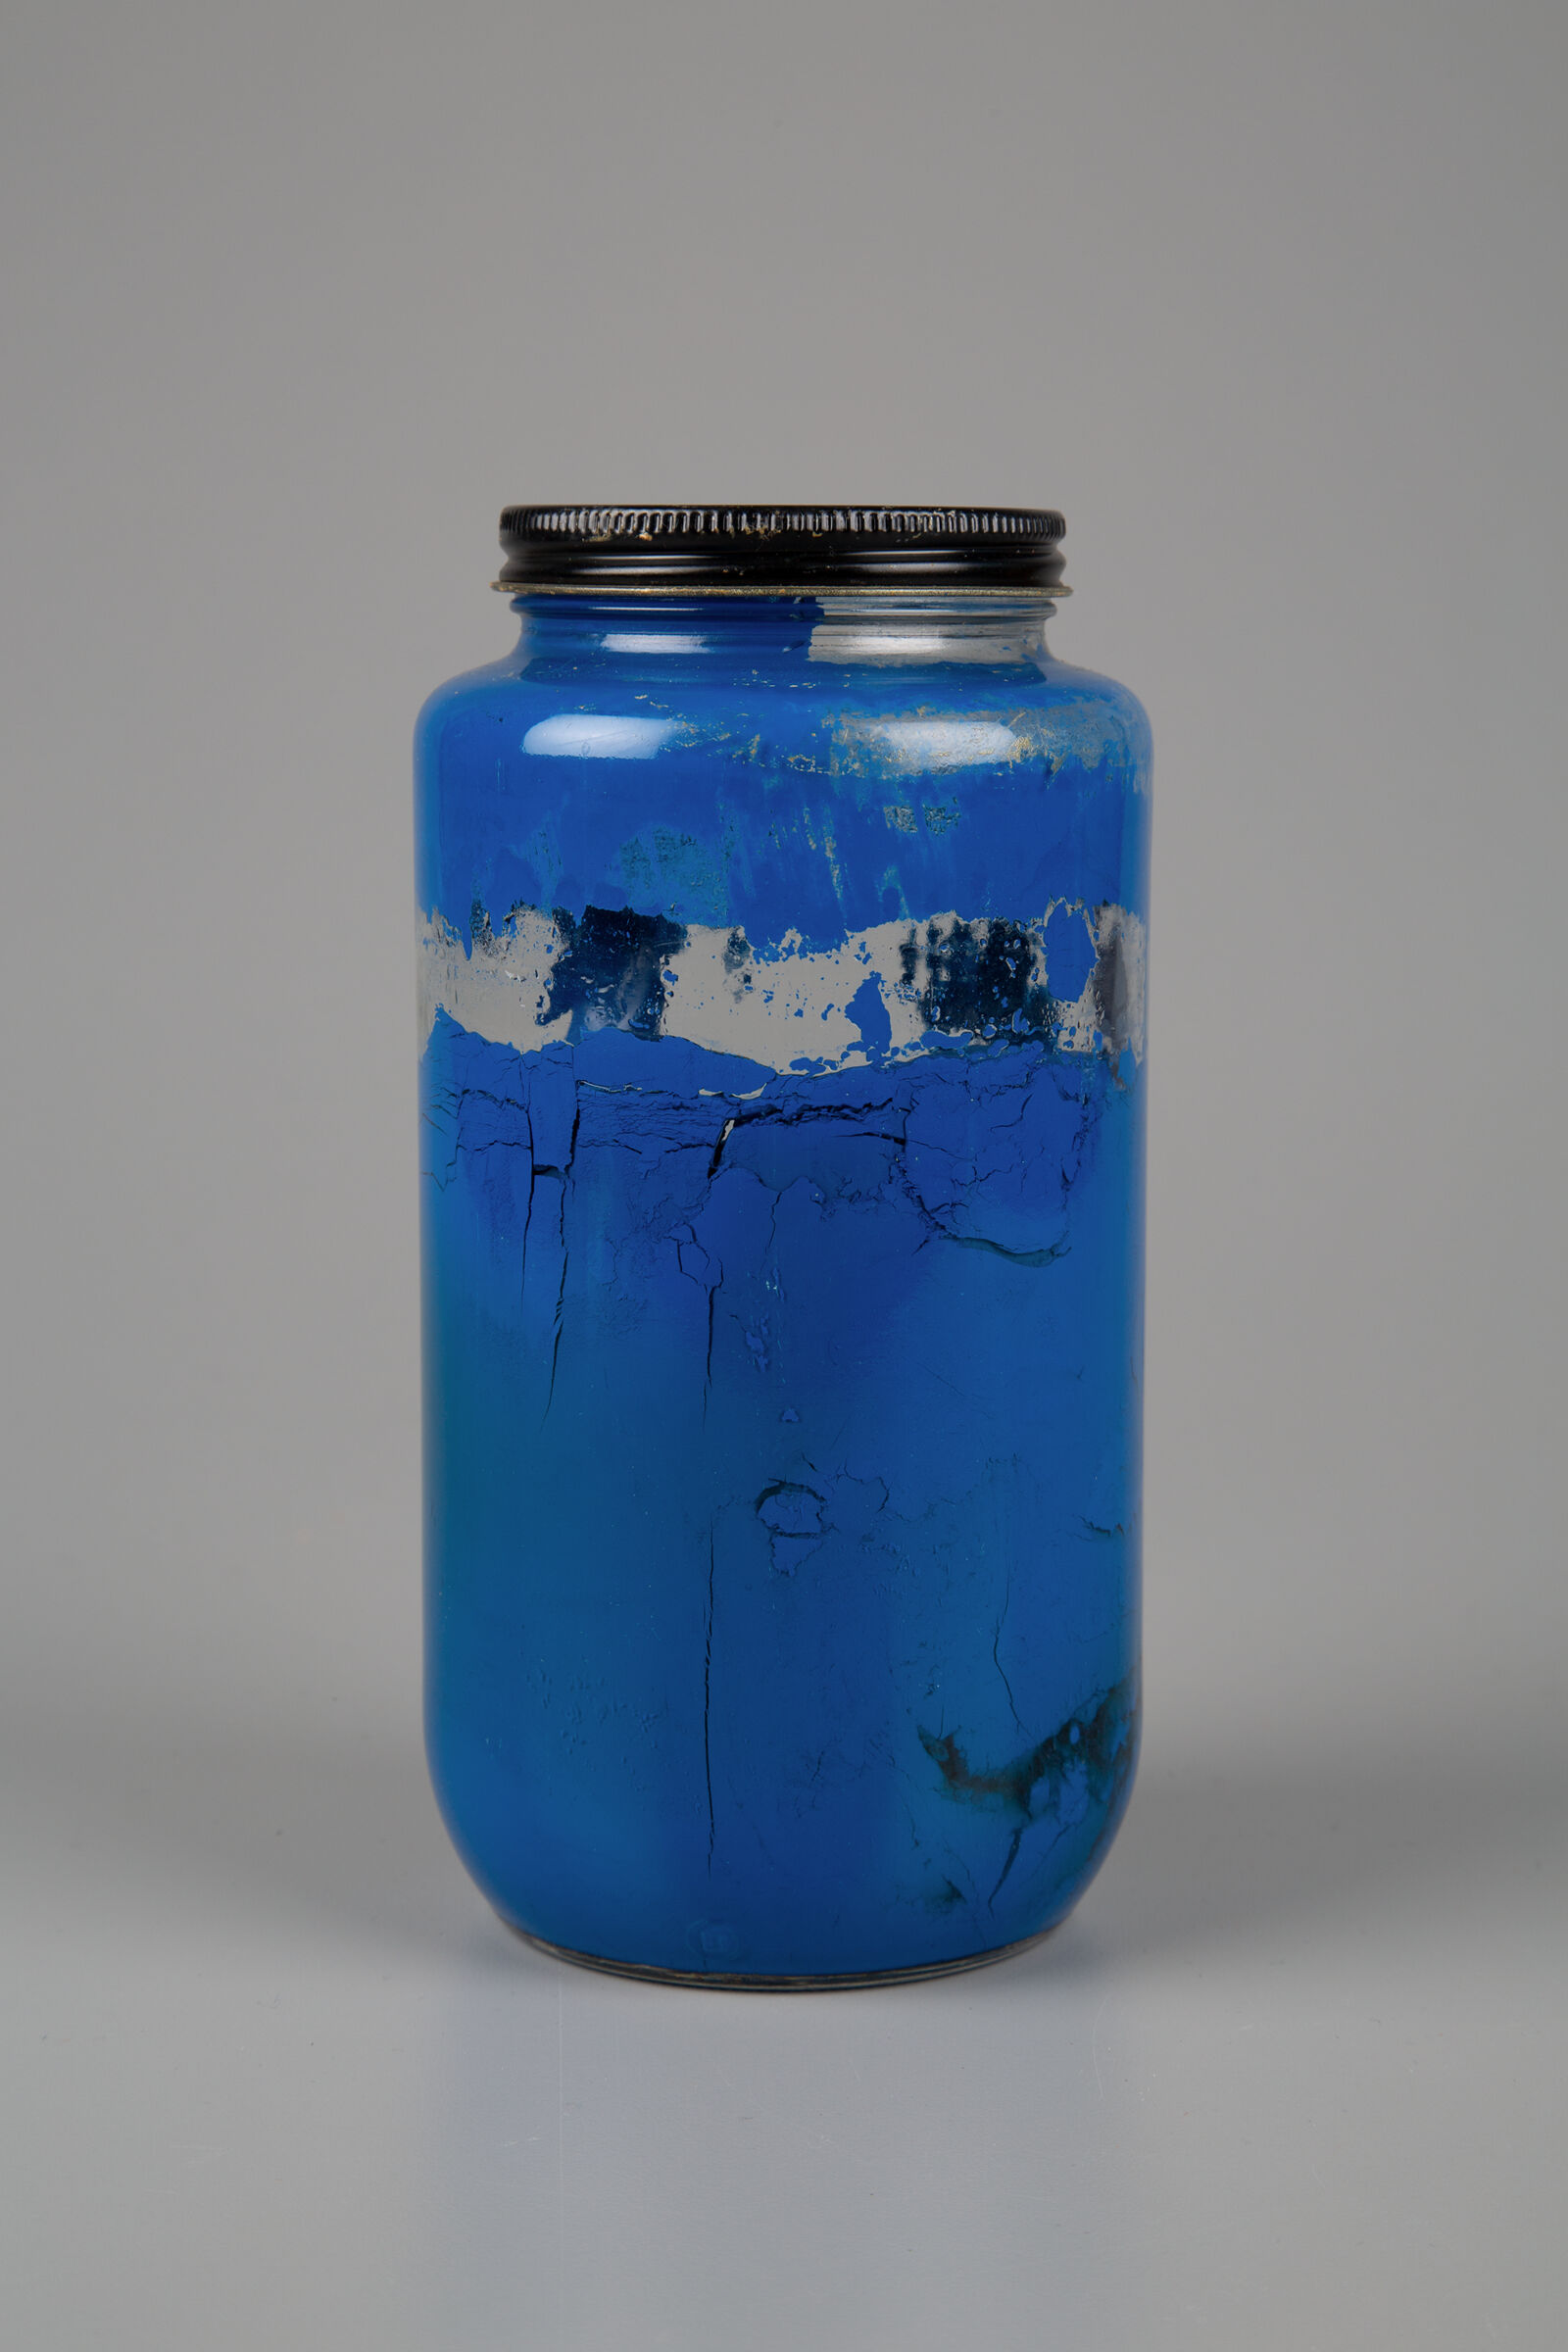 Jar Of Blue Paint